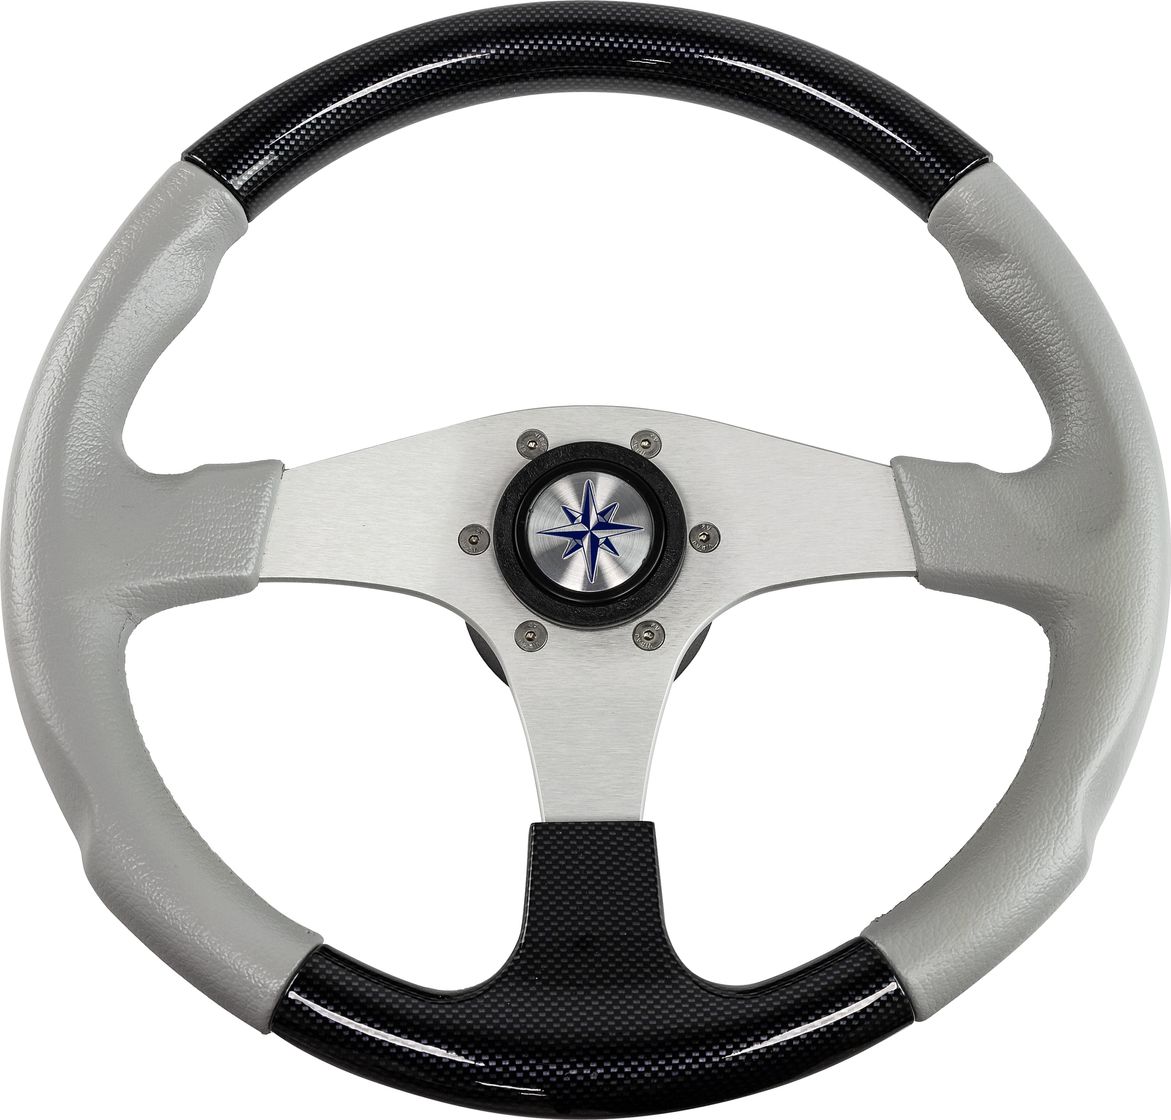 Рулевое колесо EVO MARINE 2 обод черный/серый, спицы серебряные д. 355 мм VN850003-35 рулевое колесо manta обод белый спицы серебряные д 355 мм vn70551 08